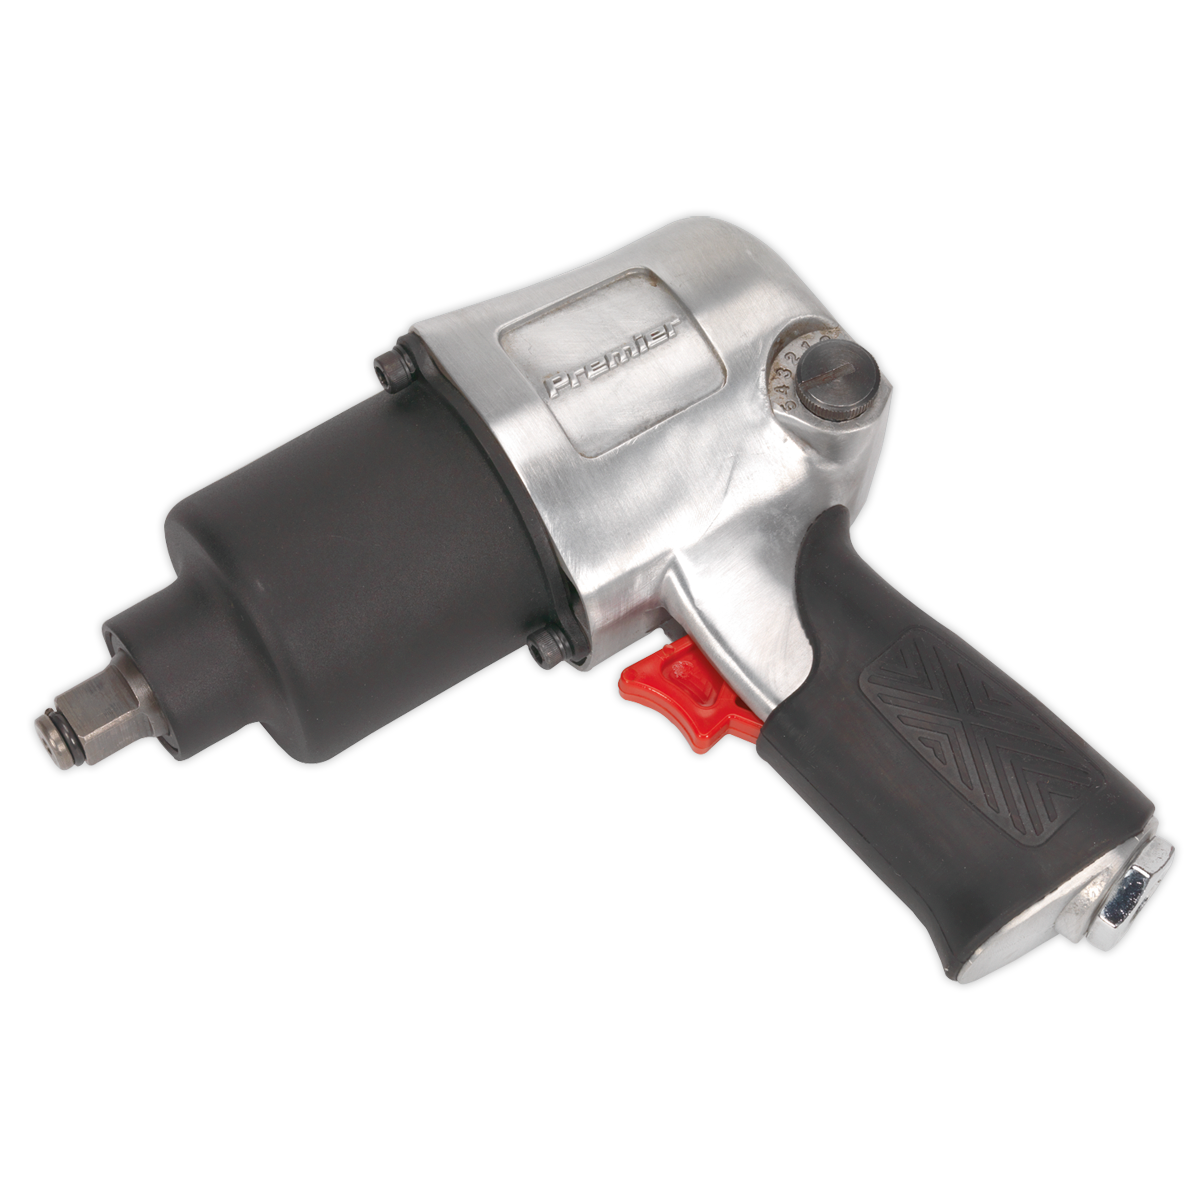 Sealey Air Impact Wrench 1/2"Sq Drive - Twin Hammer SA602